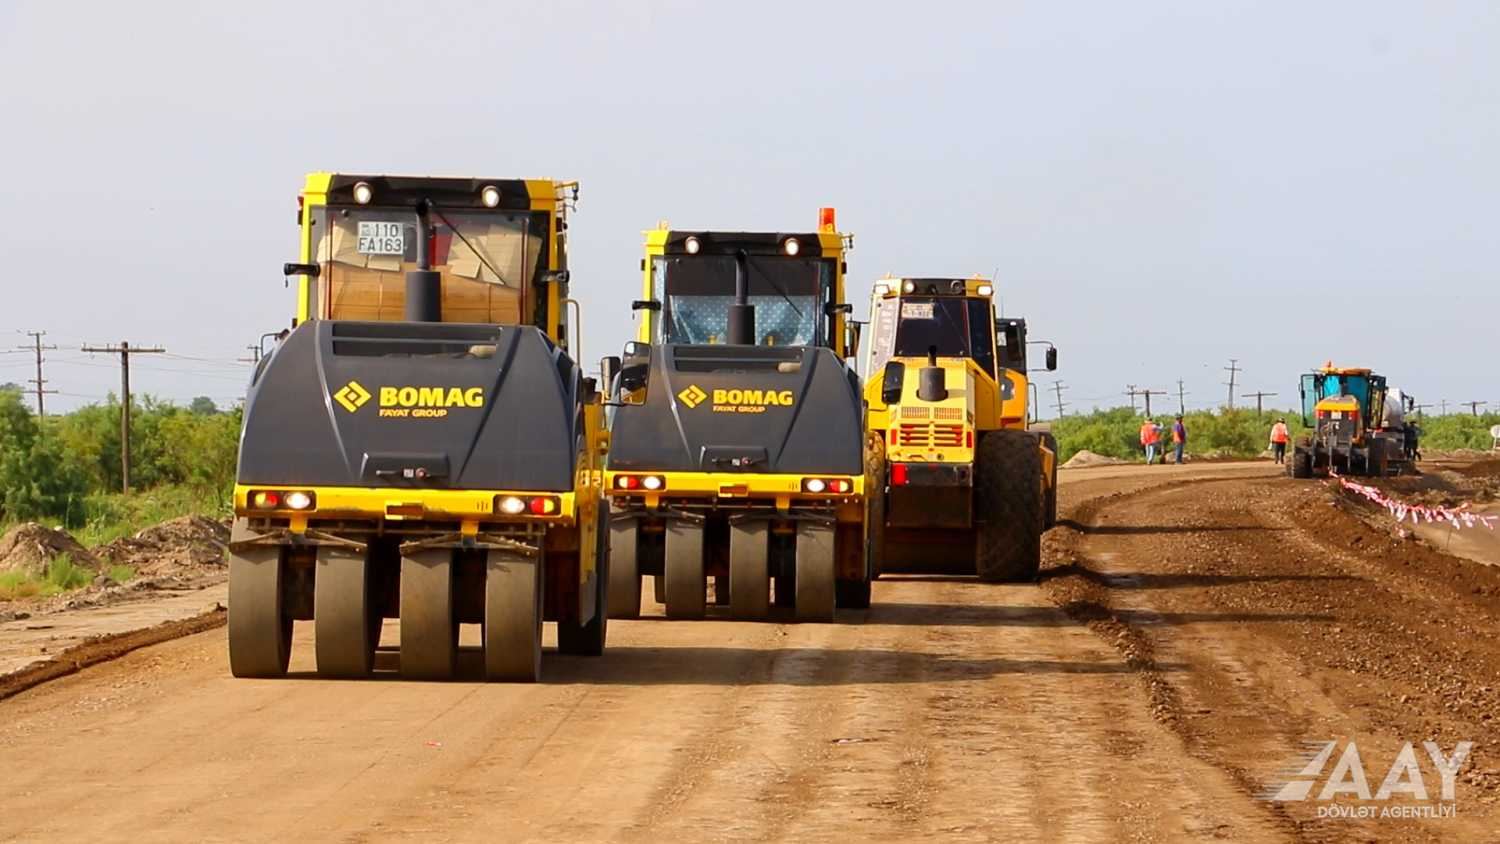 Yenikənd-Biləsuvar avtomobil yolu yenidən qurulması davam edir (FOTO/VİDEO)